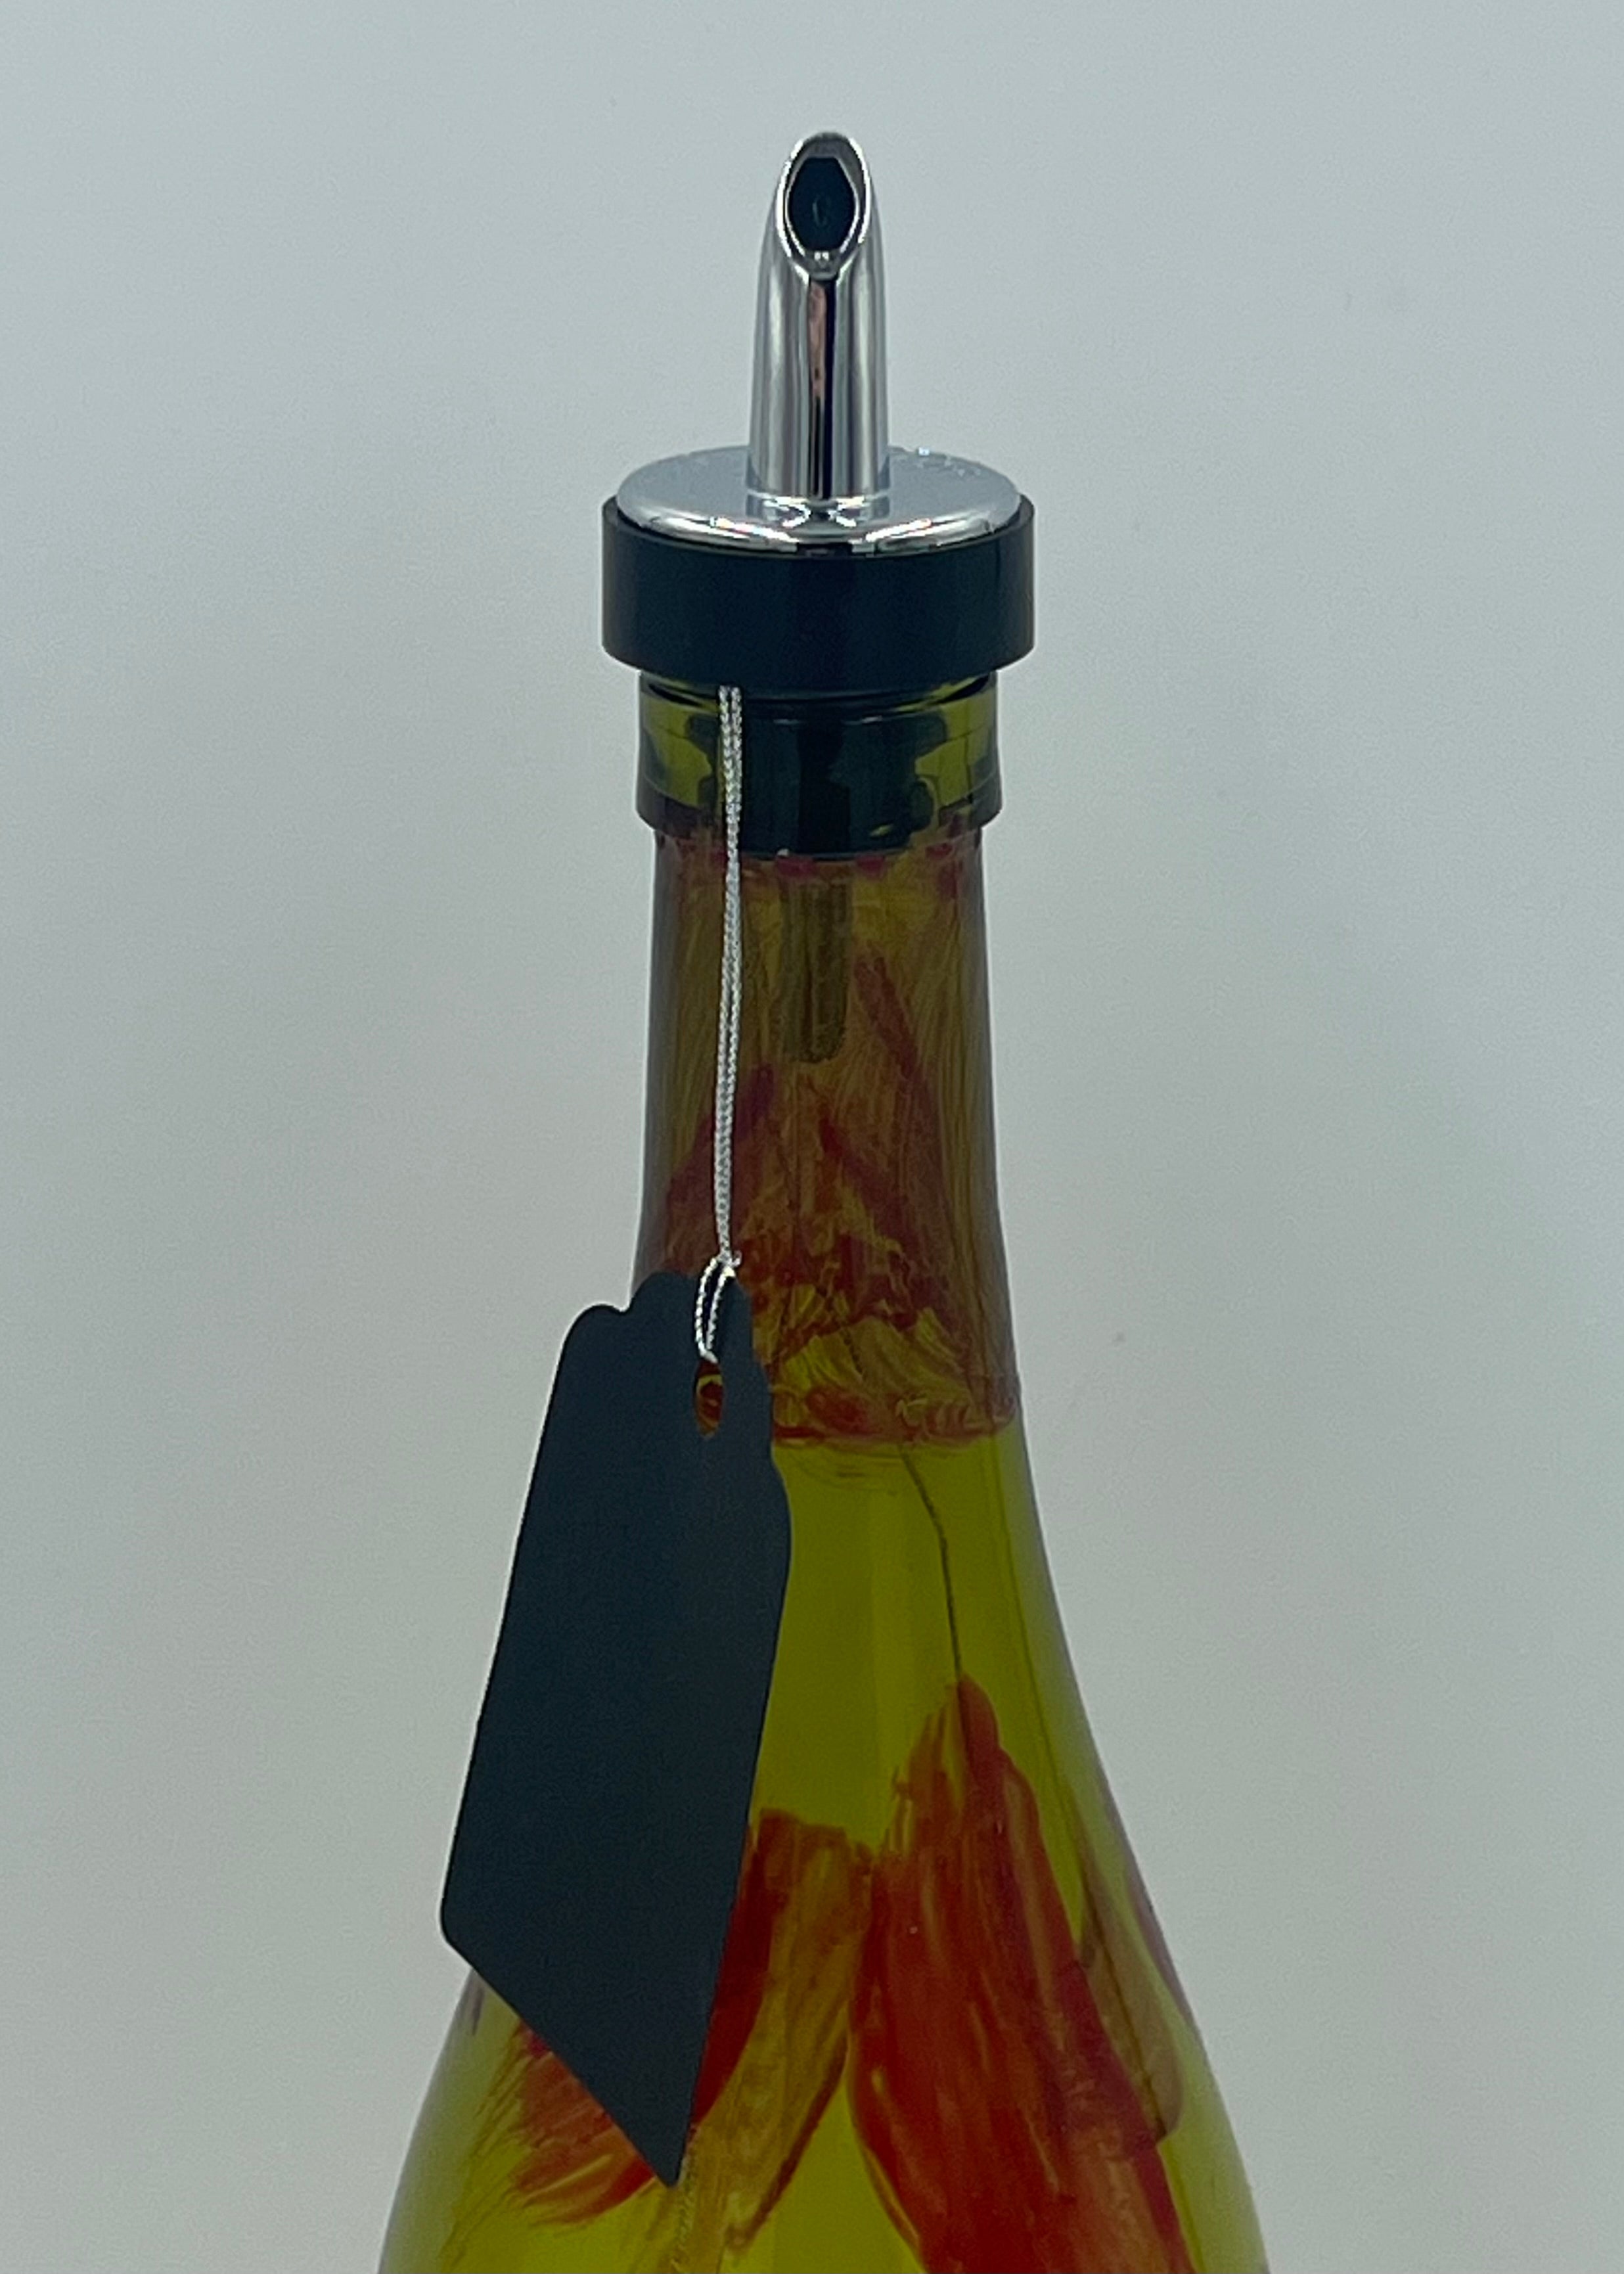 TM Liquid Dispenser - Large-64